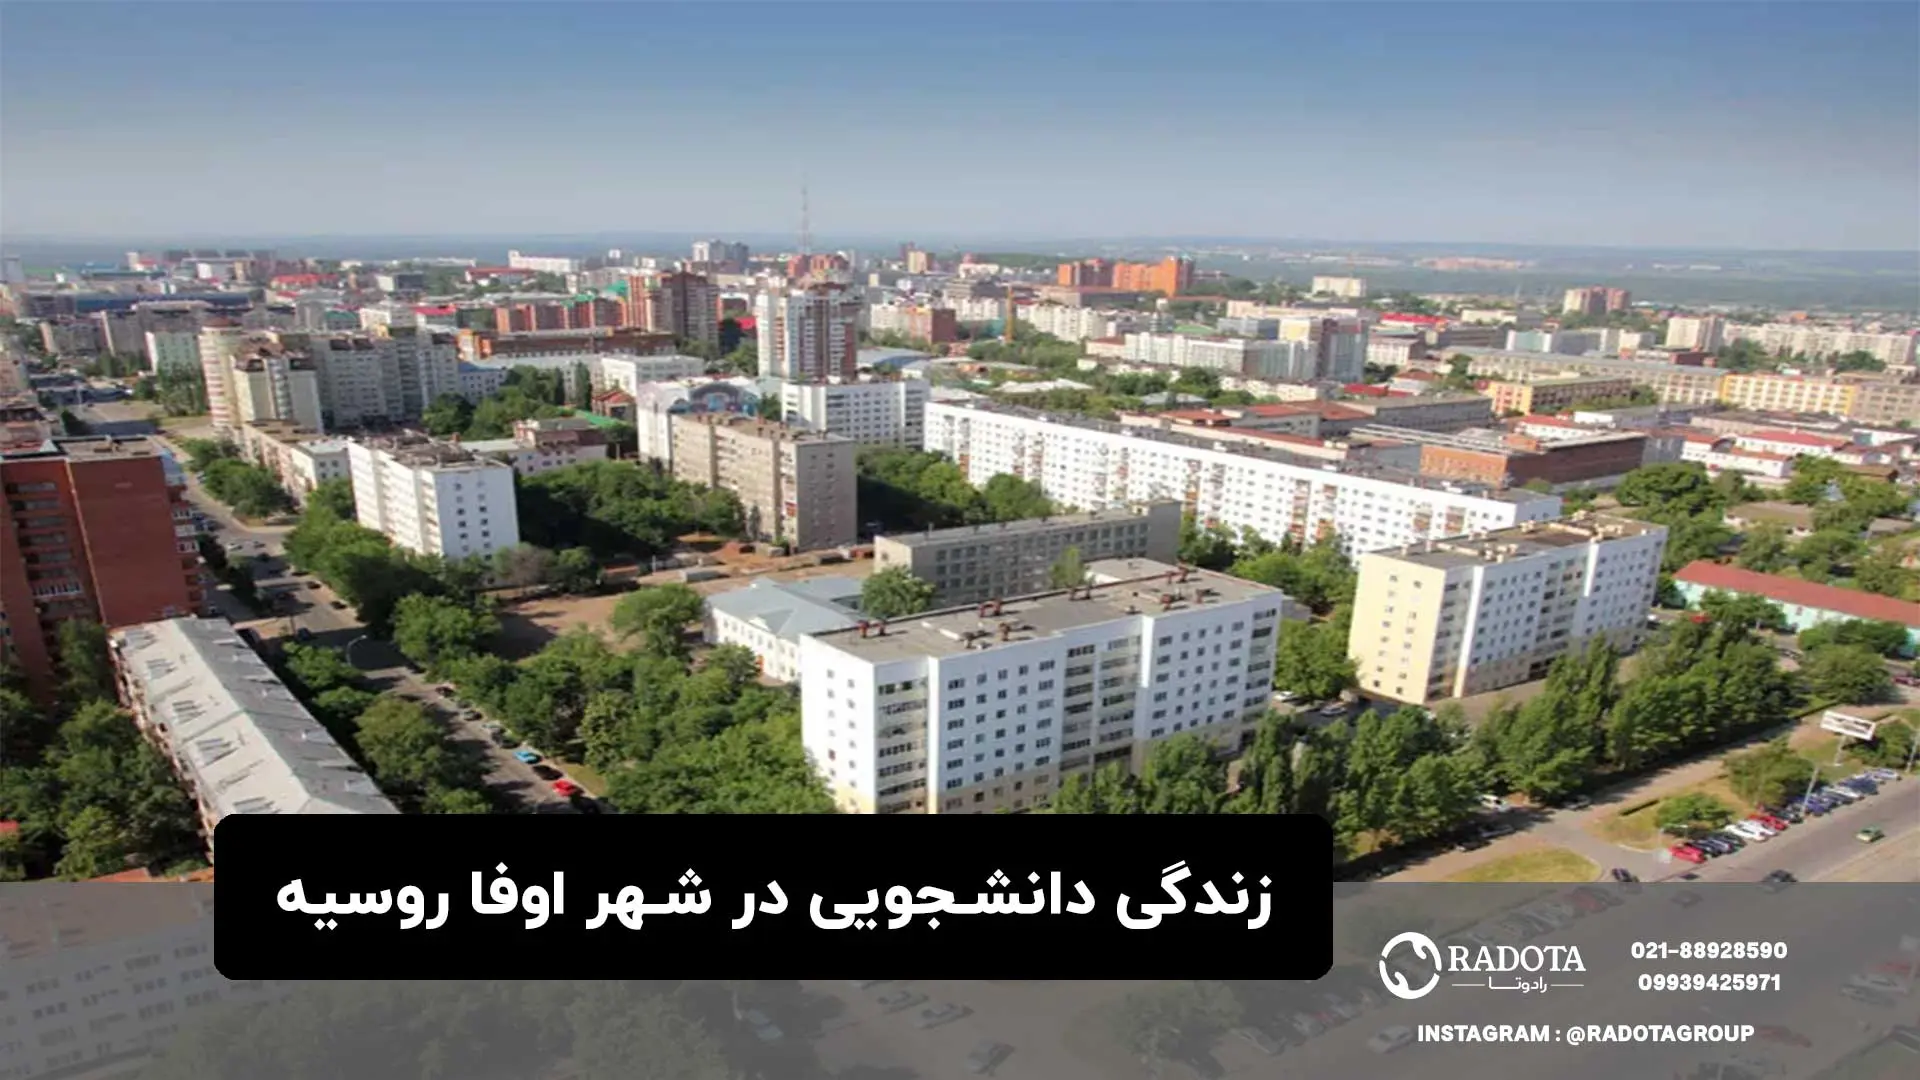 زندگی دانشجویی در شهر اوفا